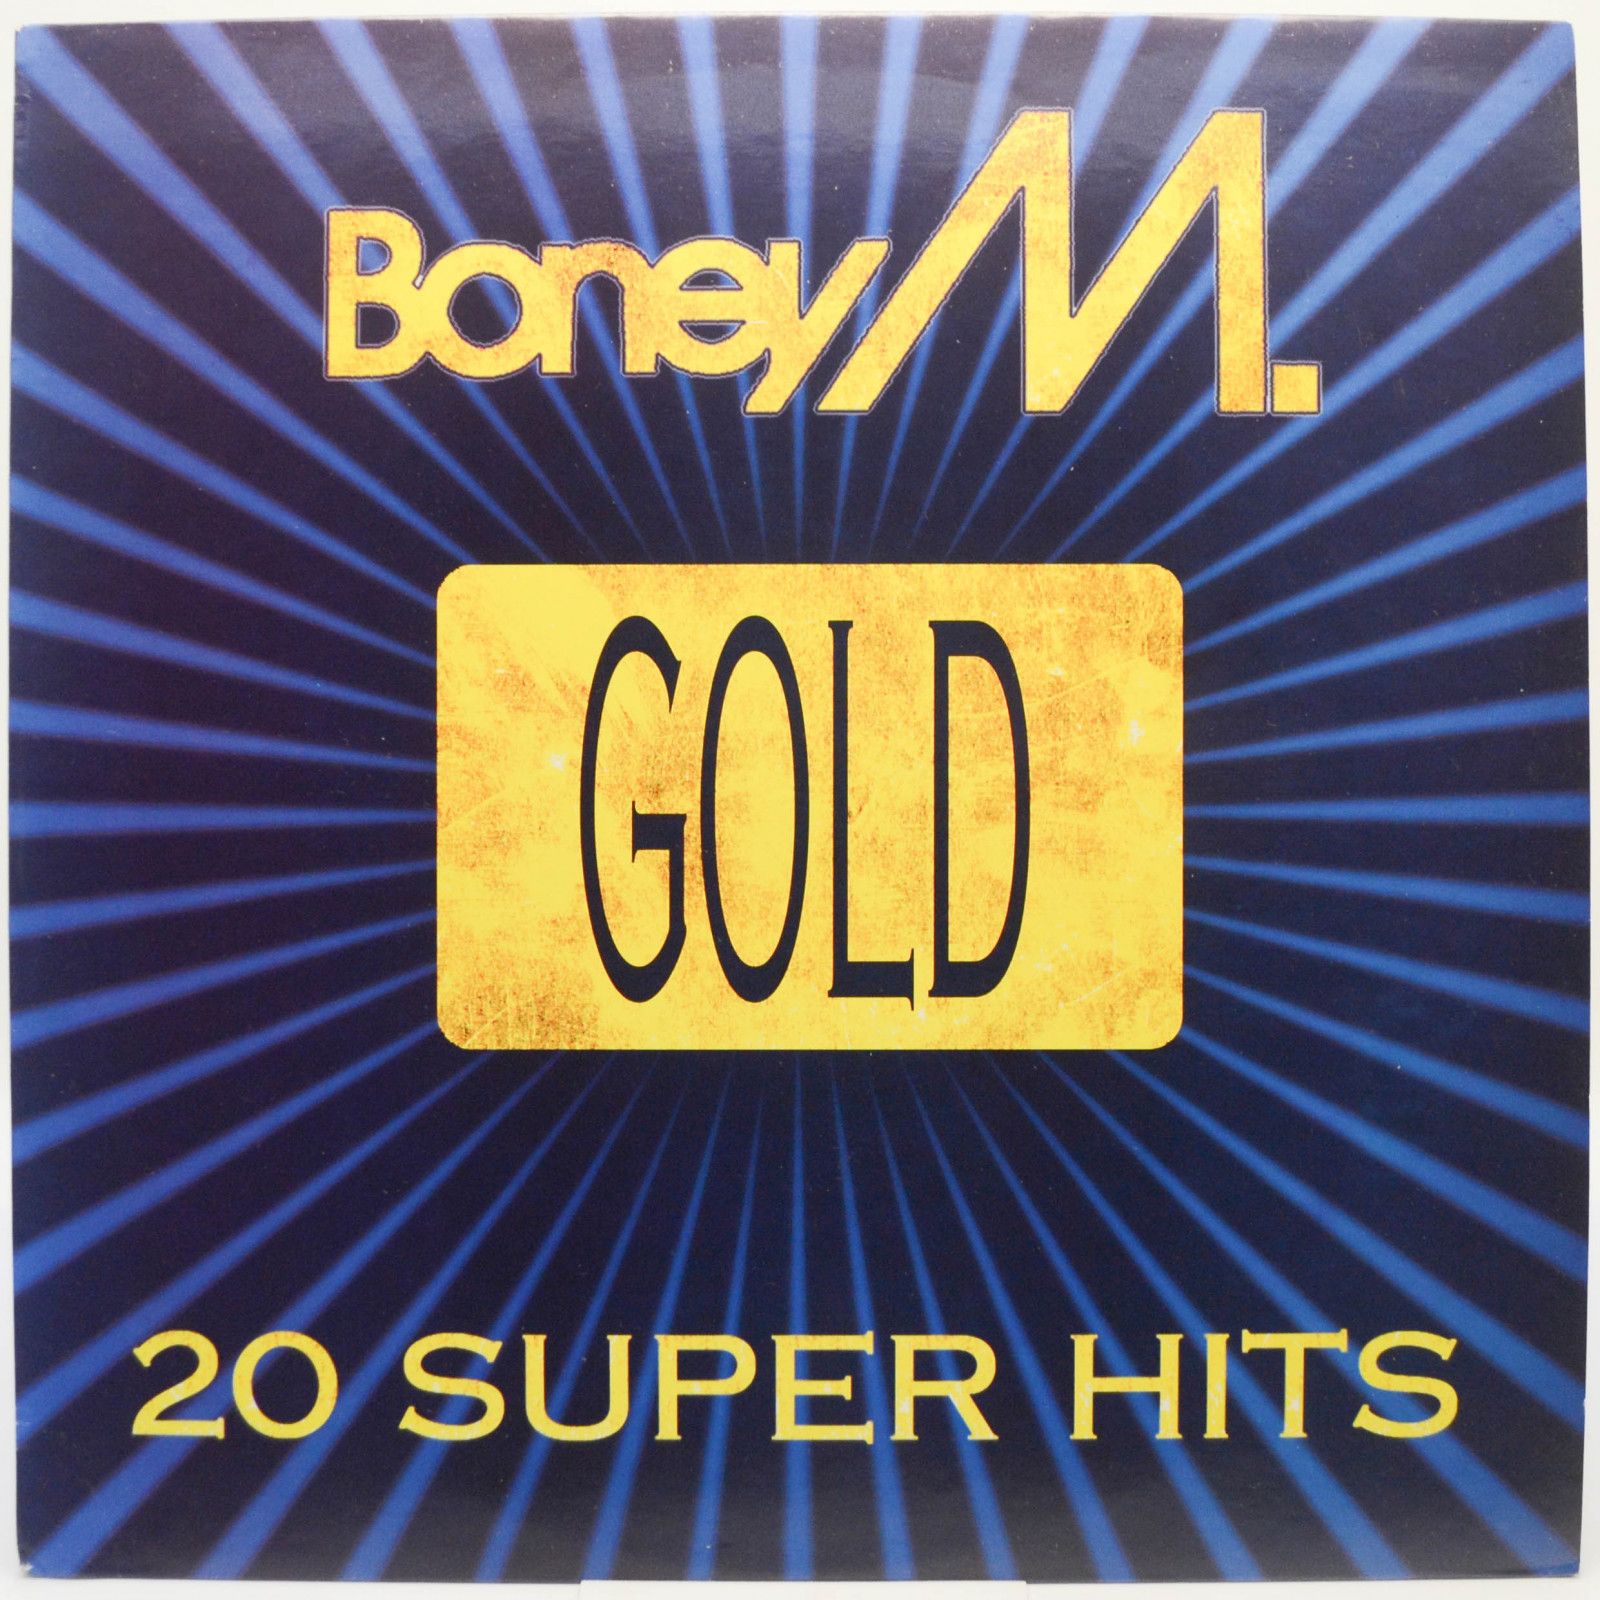 Boney M. — Gold - 20 Super Hits, 1992